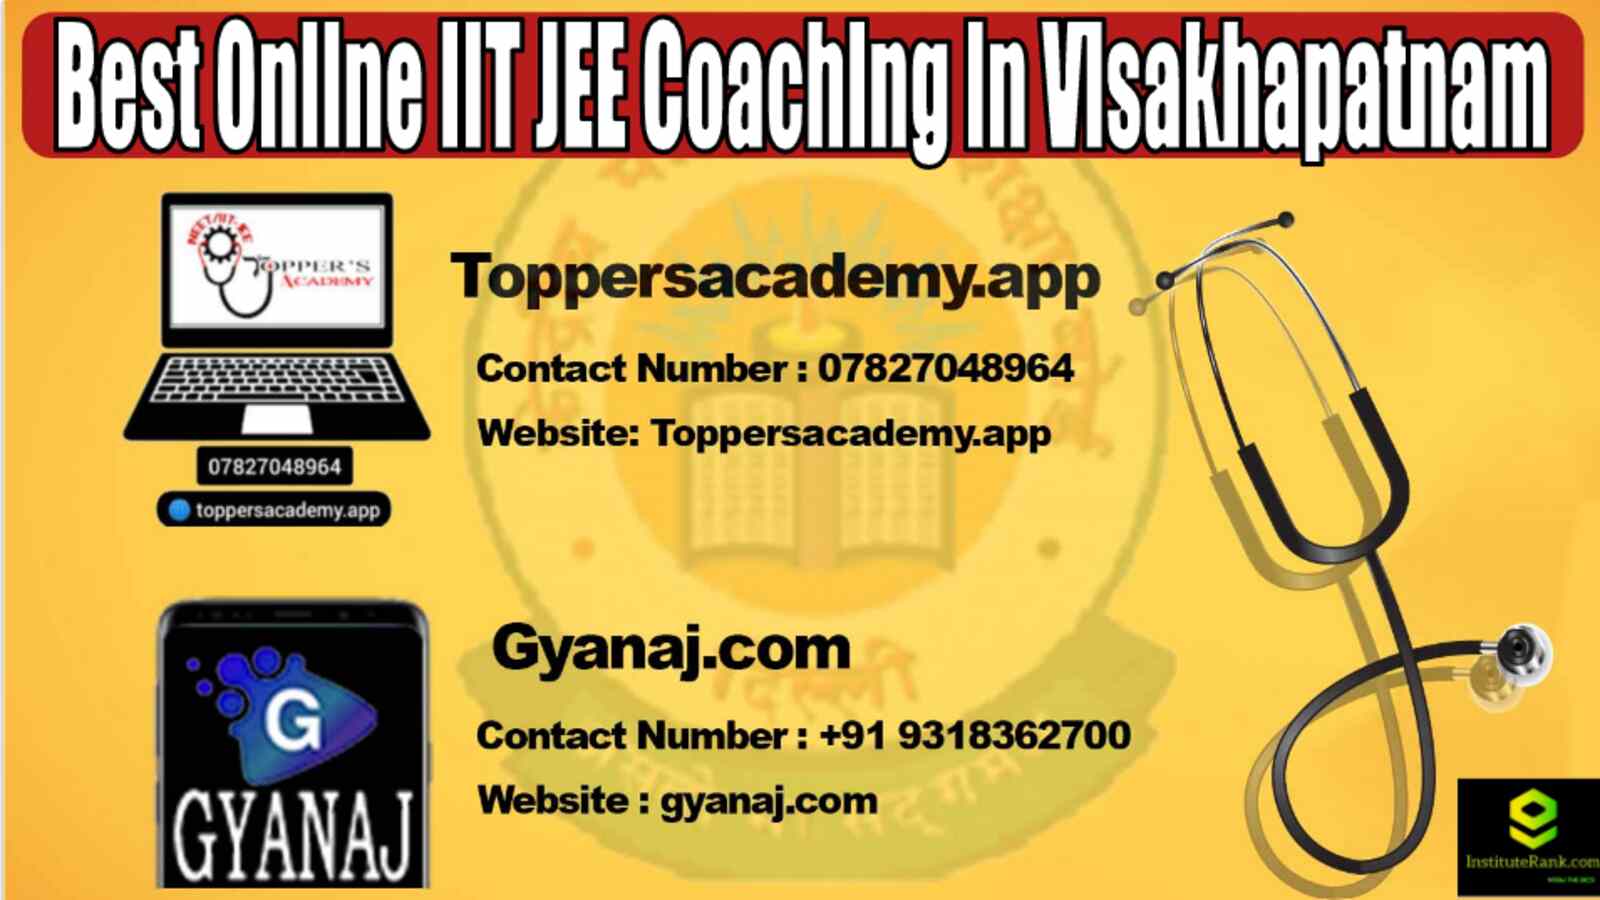 Best Online IIT JEE Coaching in Visakhapatnam 2022